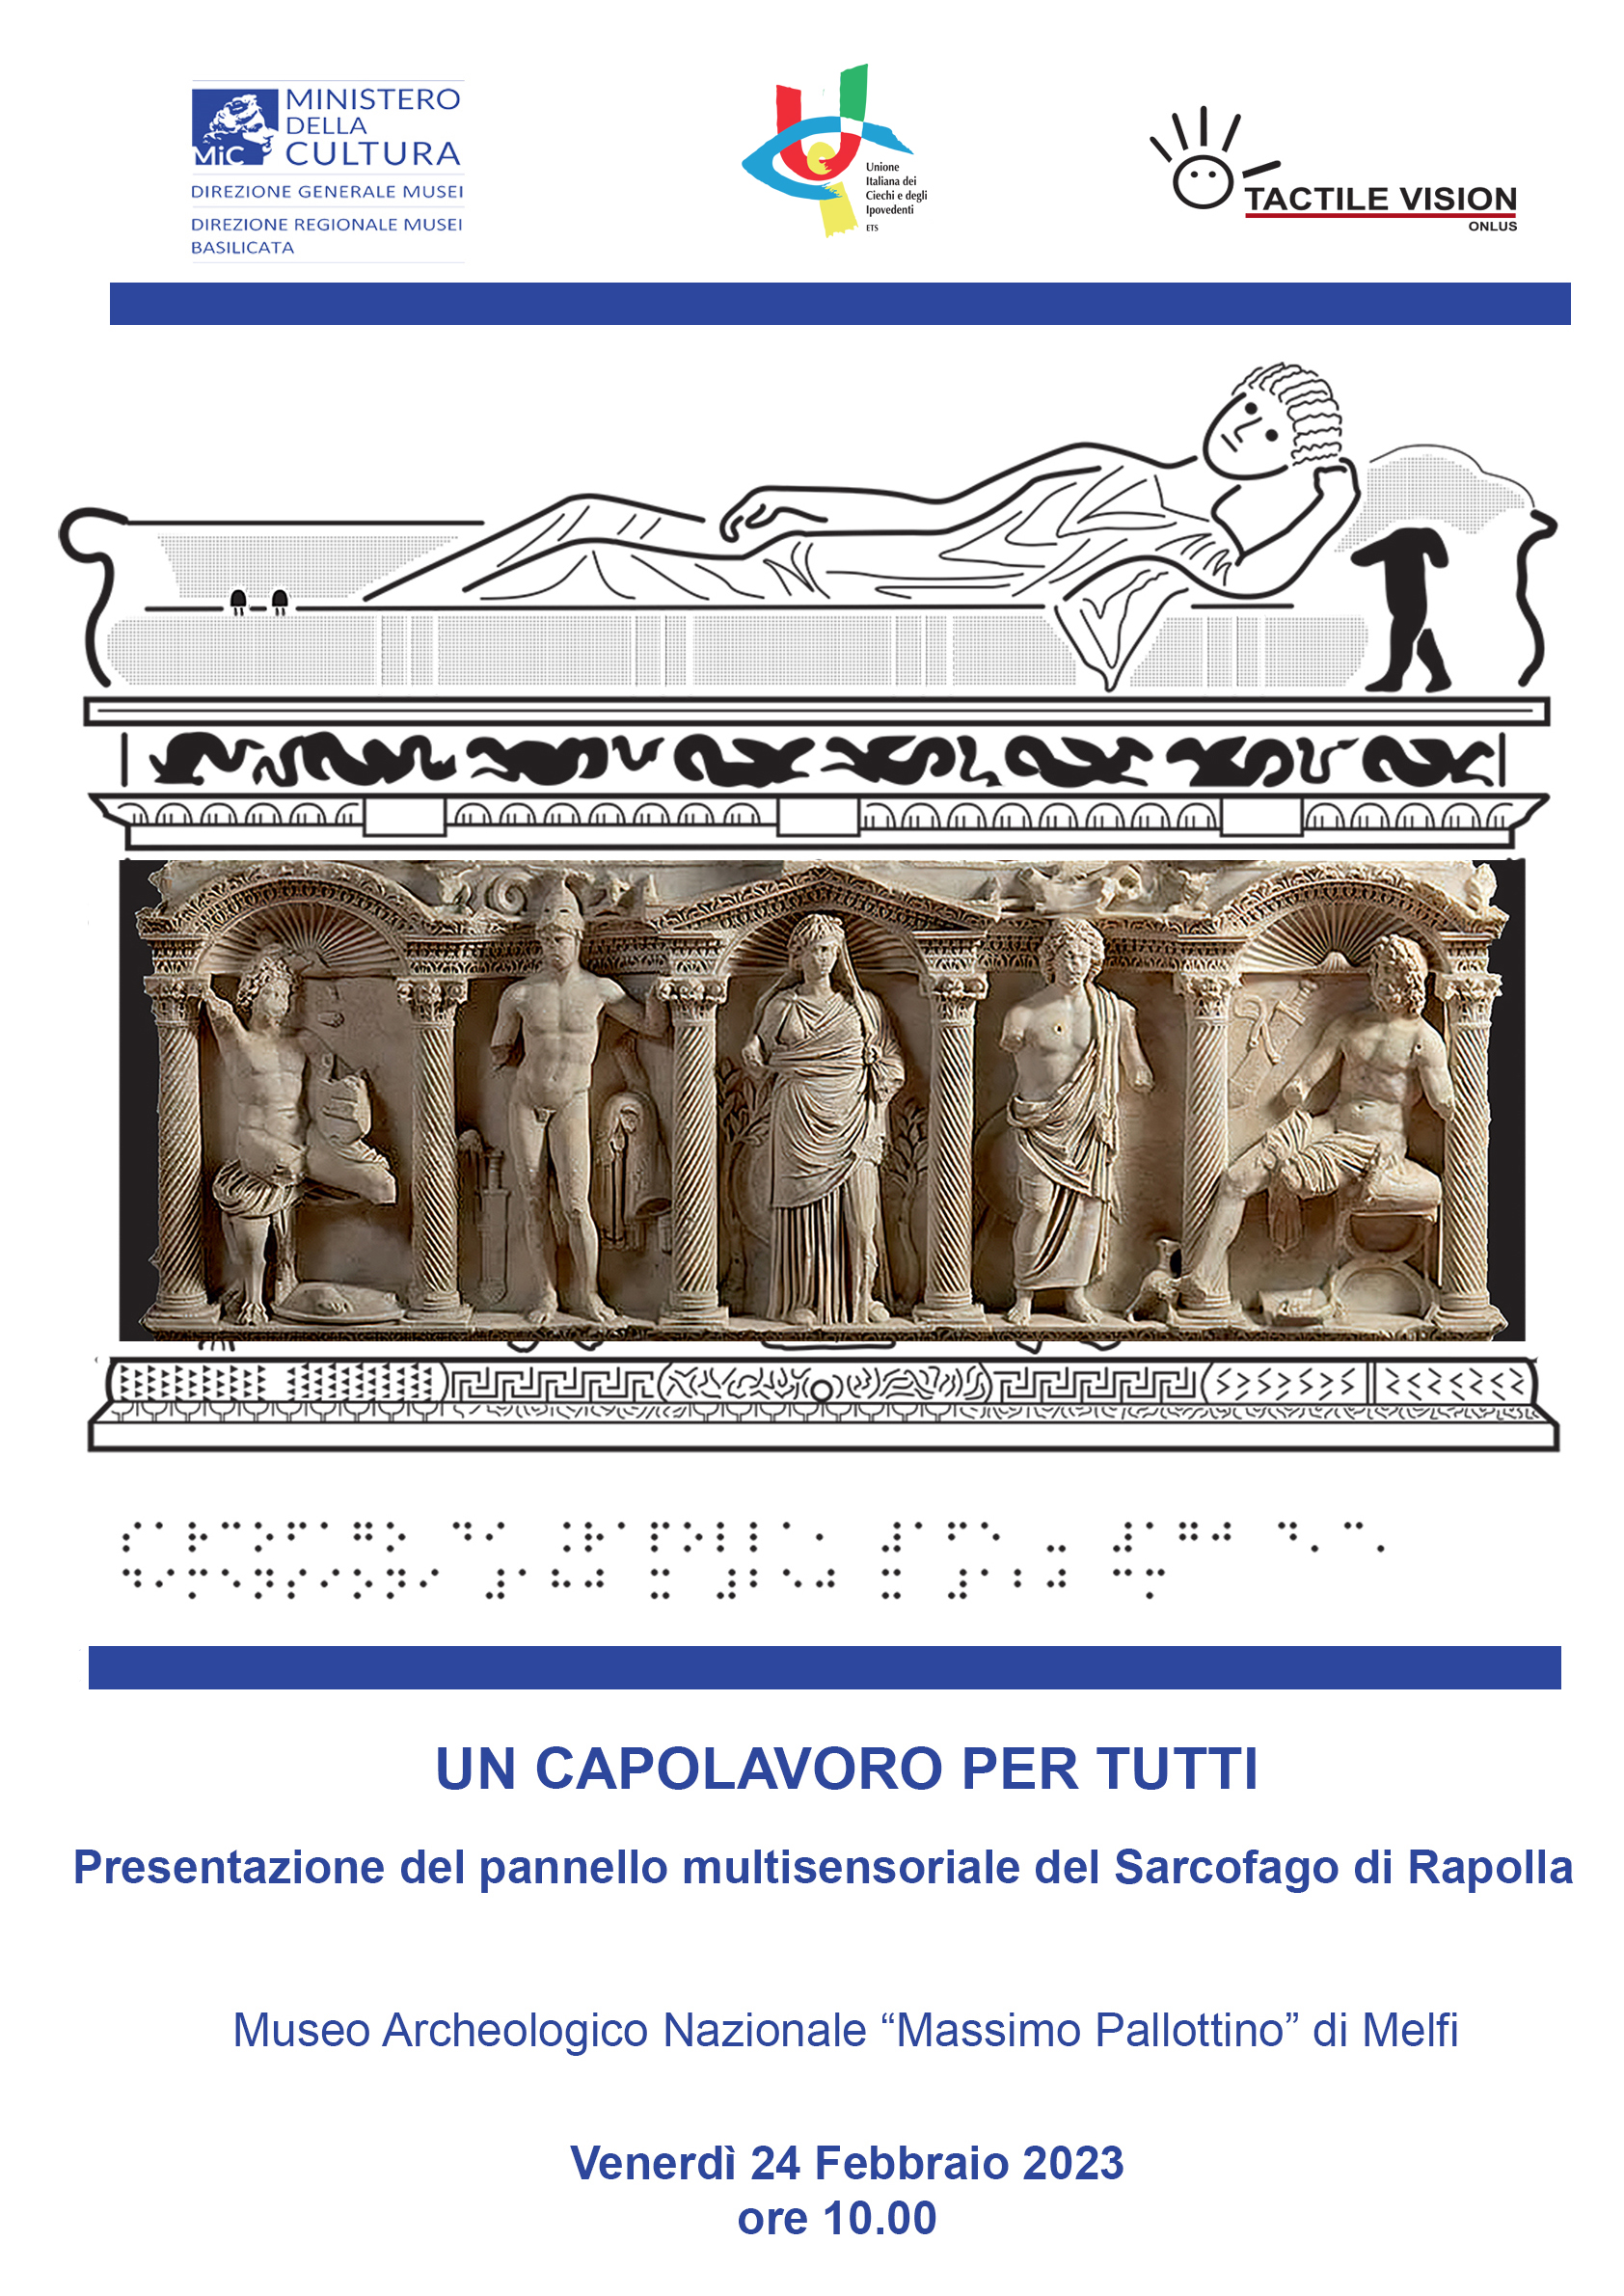 UN CAPOLAVORO PER TUTTI – Presentazione del pannello multisensoriale del Sarcofago di Rapolla